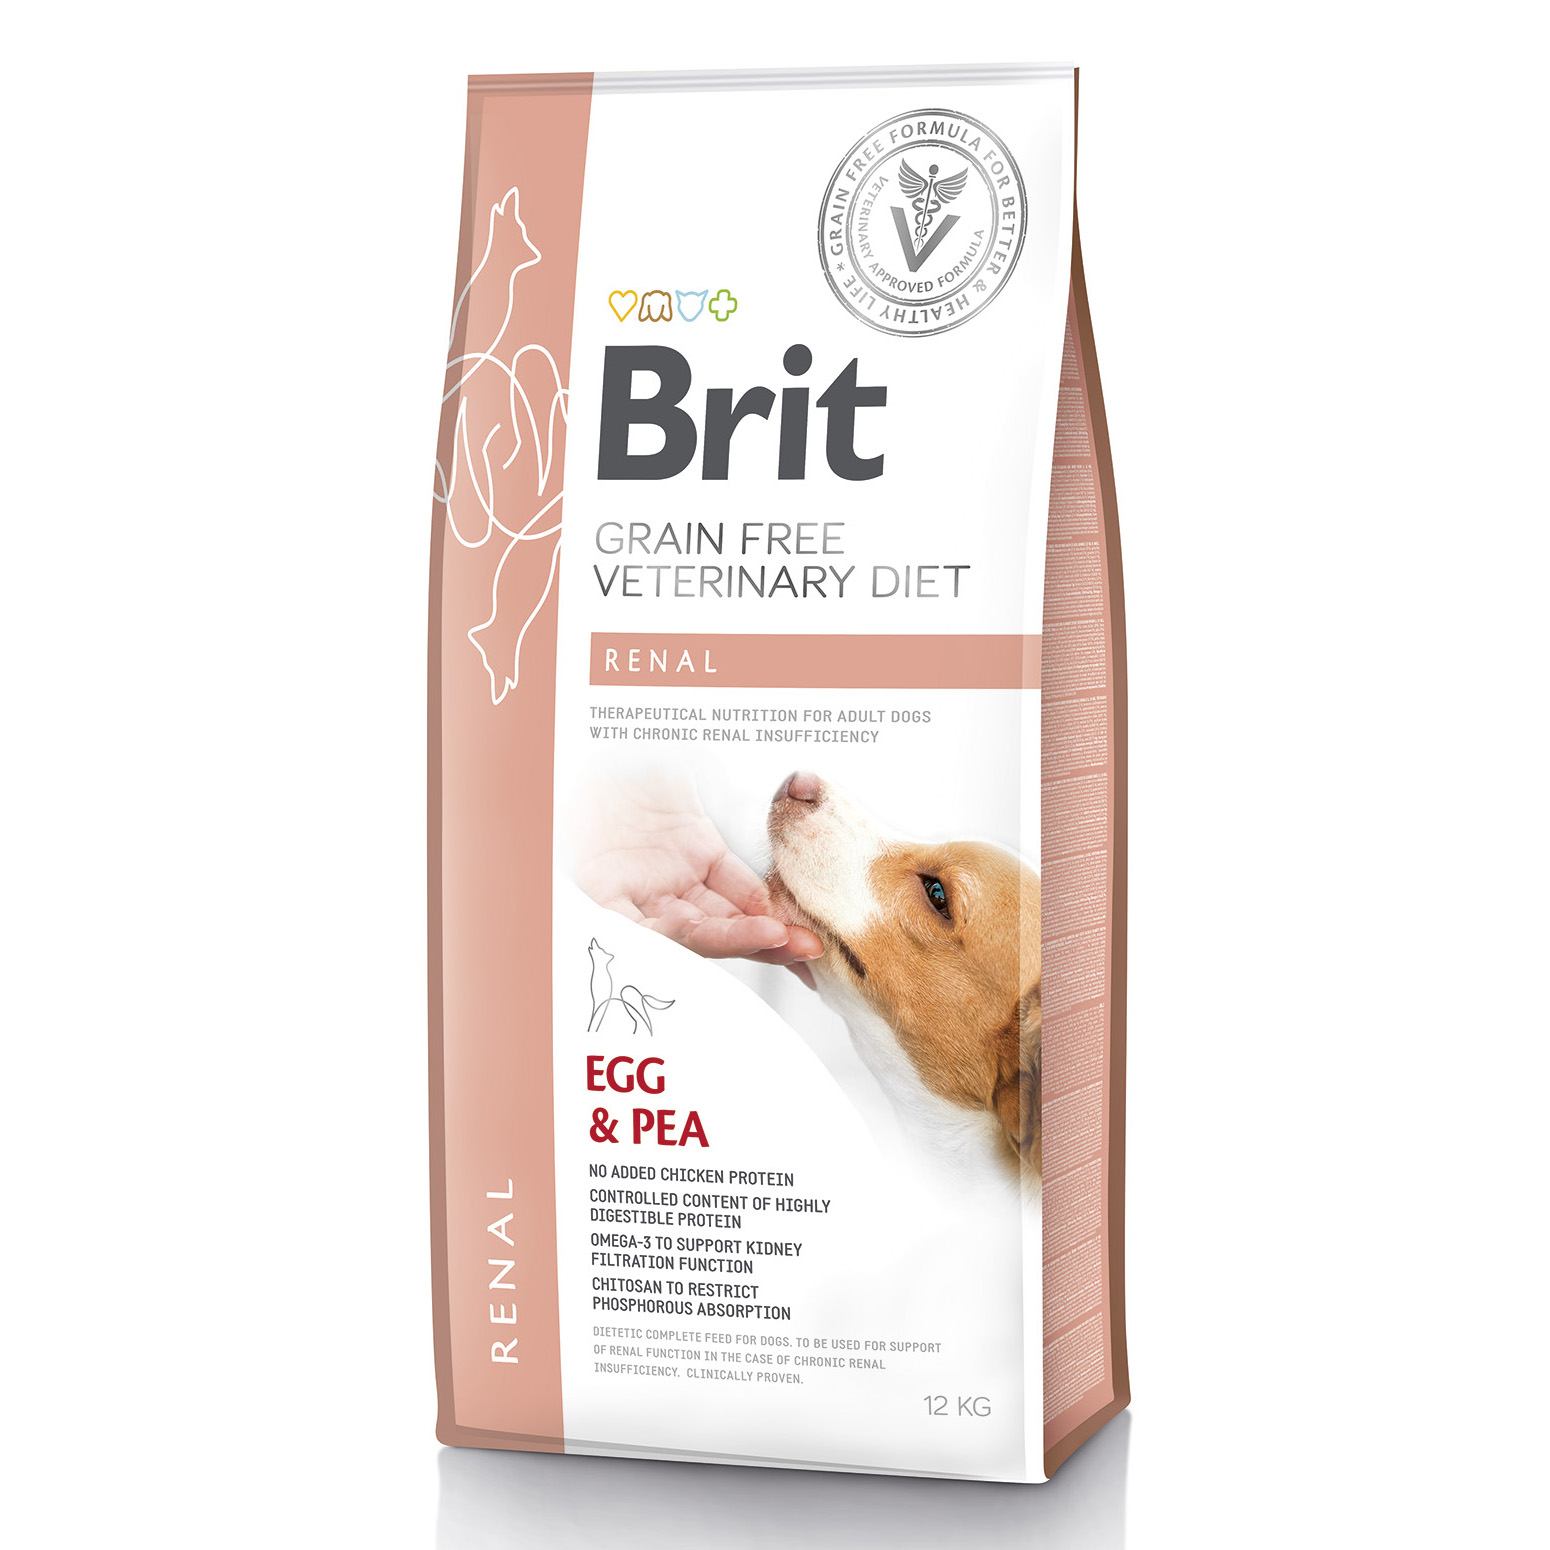 Беззерновой сухой корм для собак с почечной недостаточностью Brit GF VetDiets Dog Renal, с яйцом, горохом и гречкой, 12 кг - фото 1